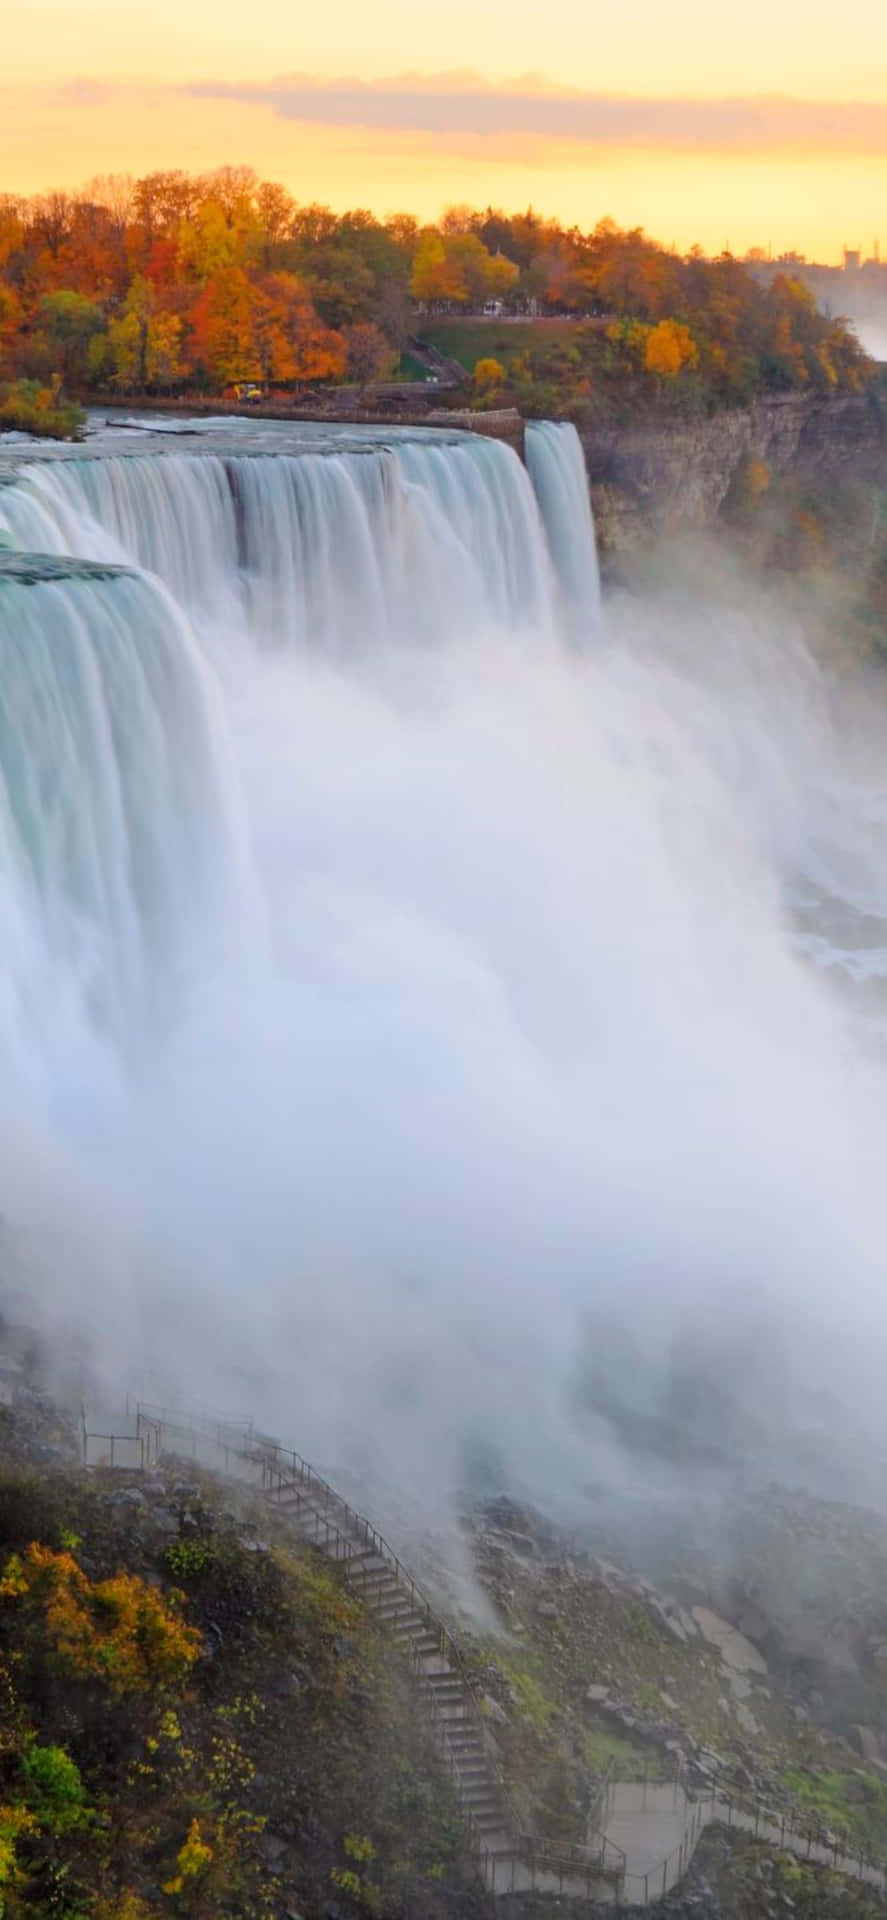 Fundode Ecrã De Outono Para Iphone X De Niagara Falls.